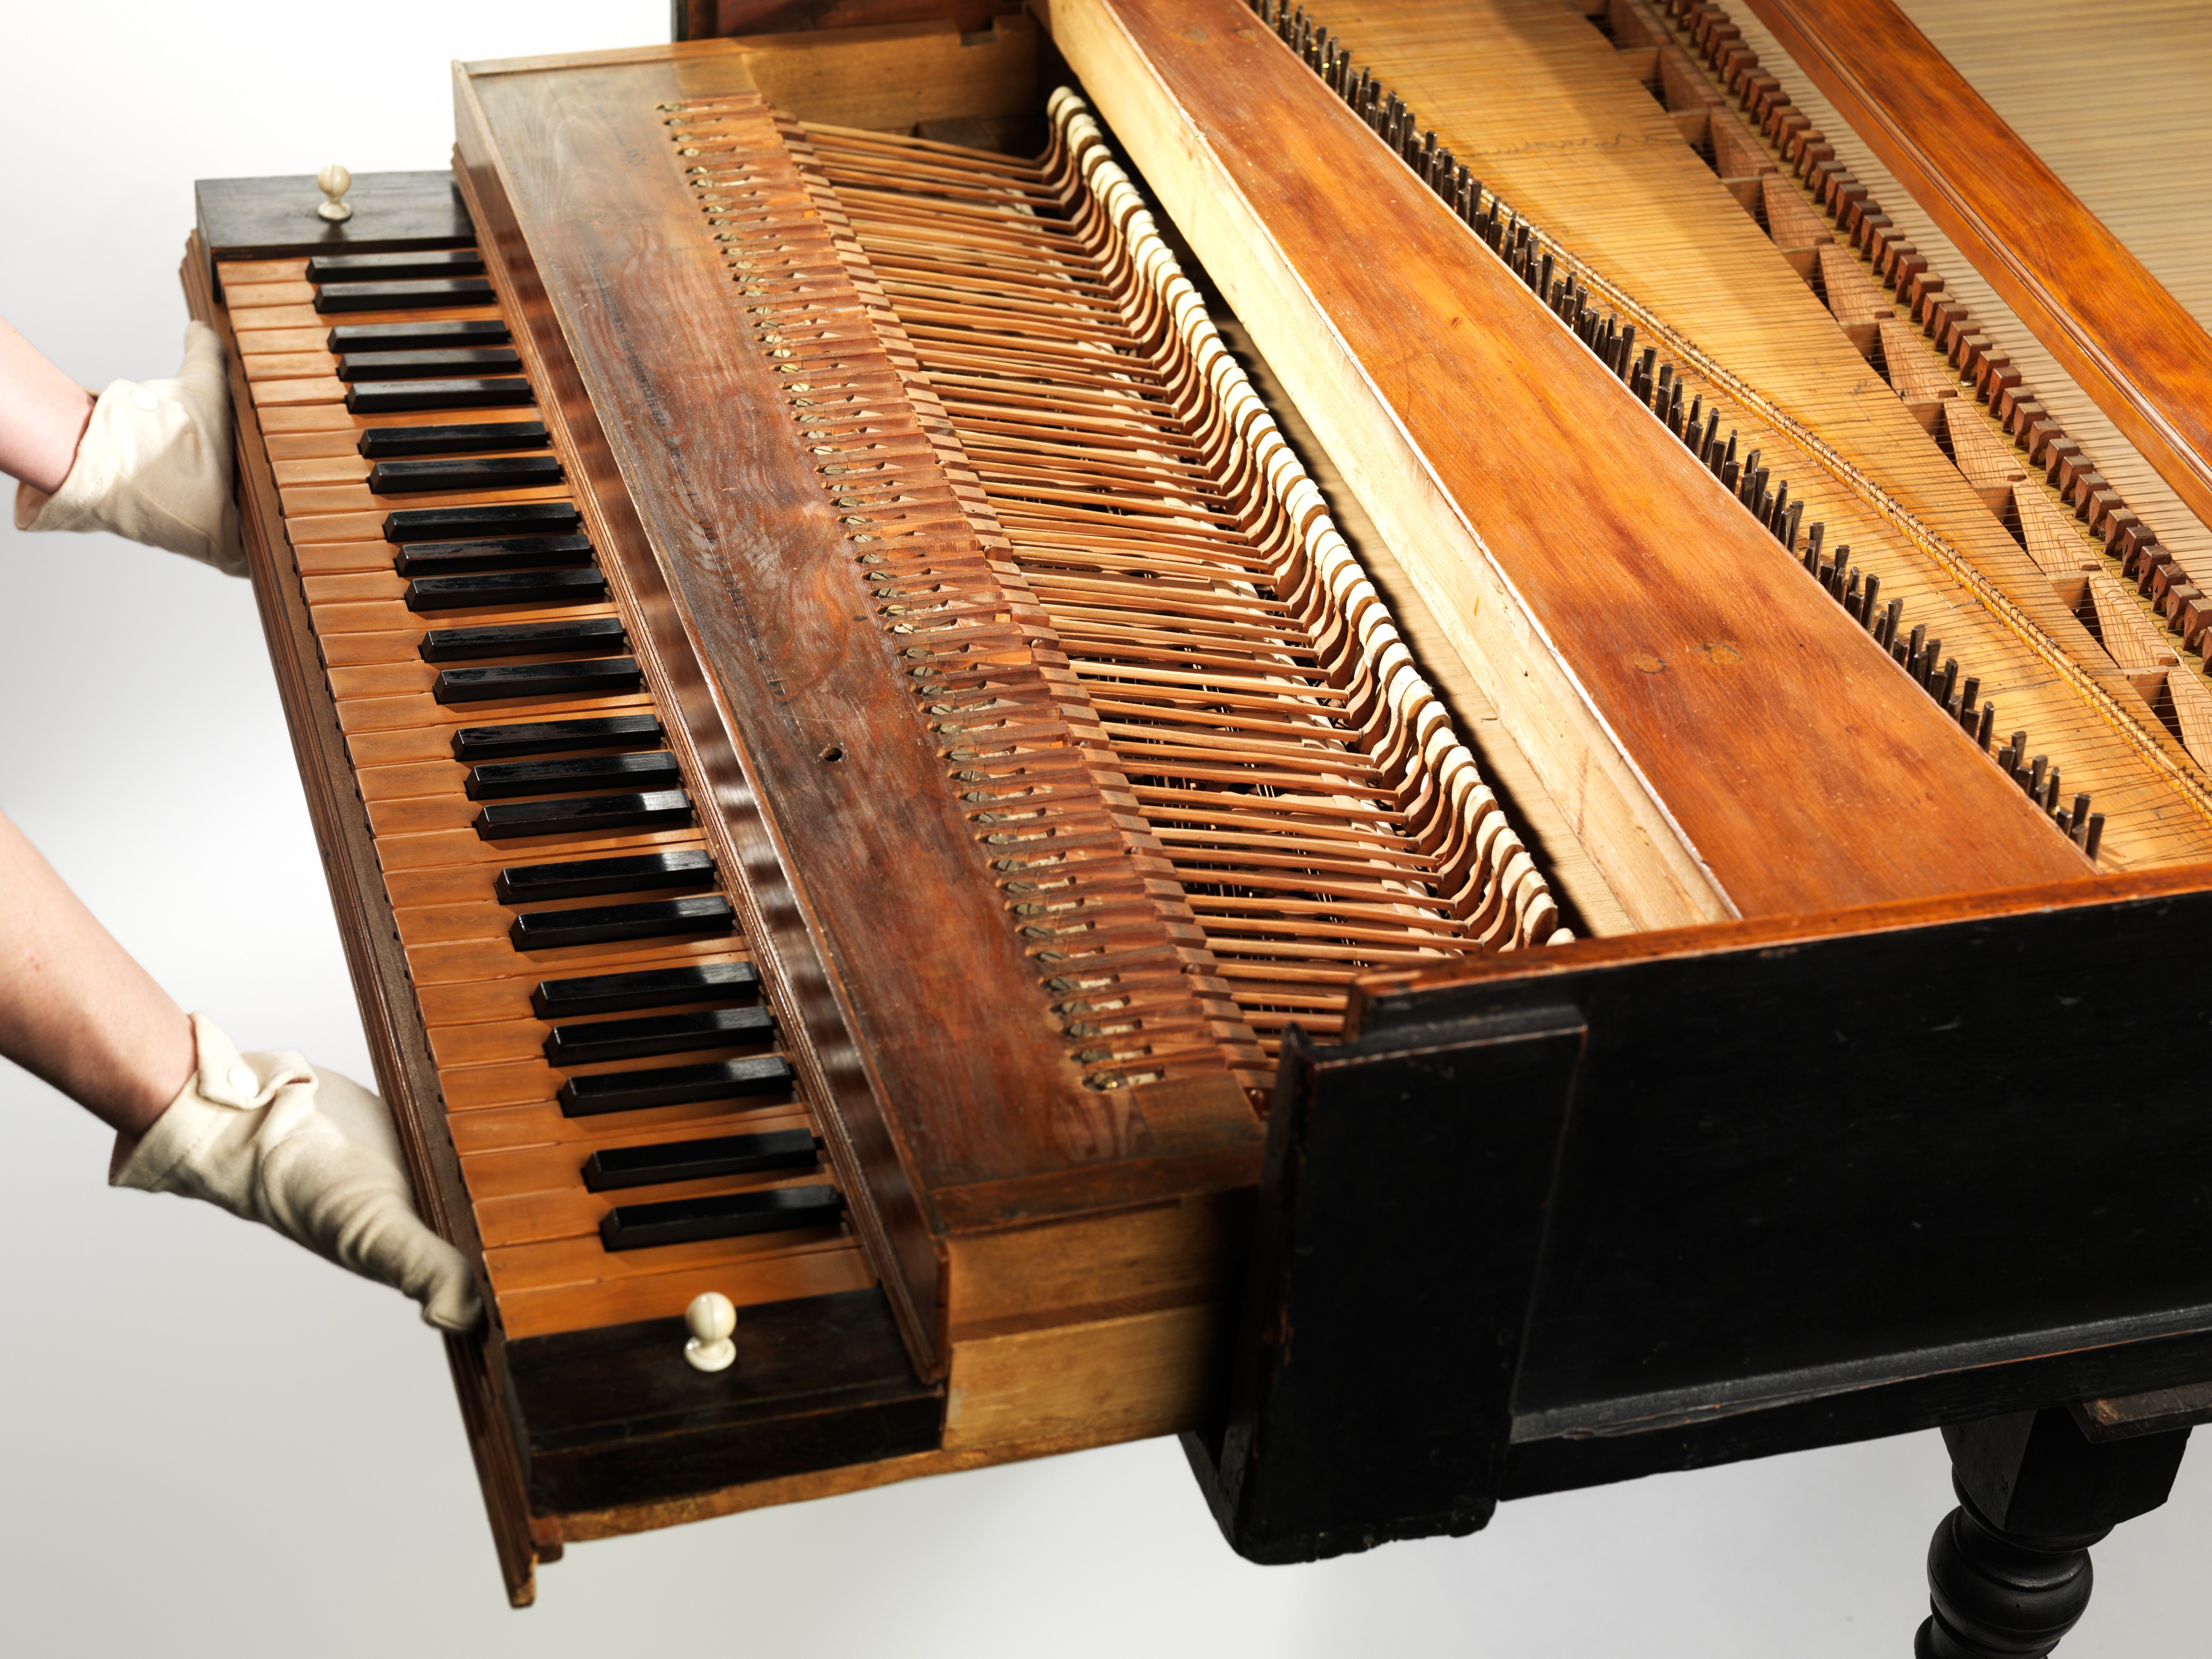 54-key Cristofori Grand Piano at The Met